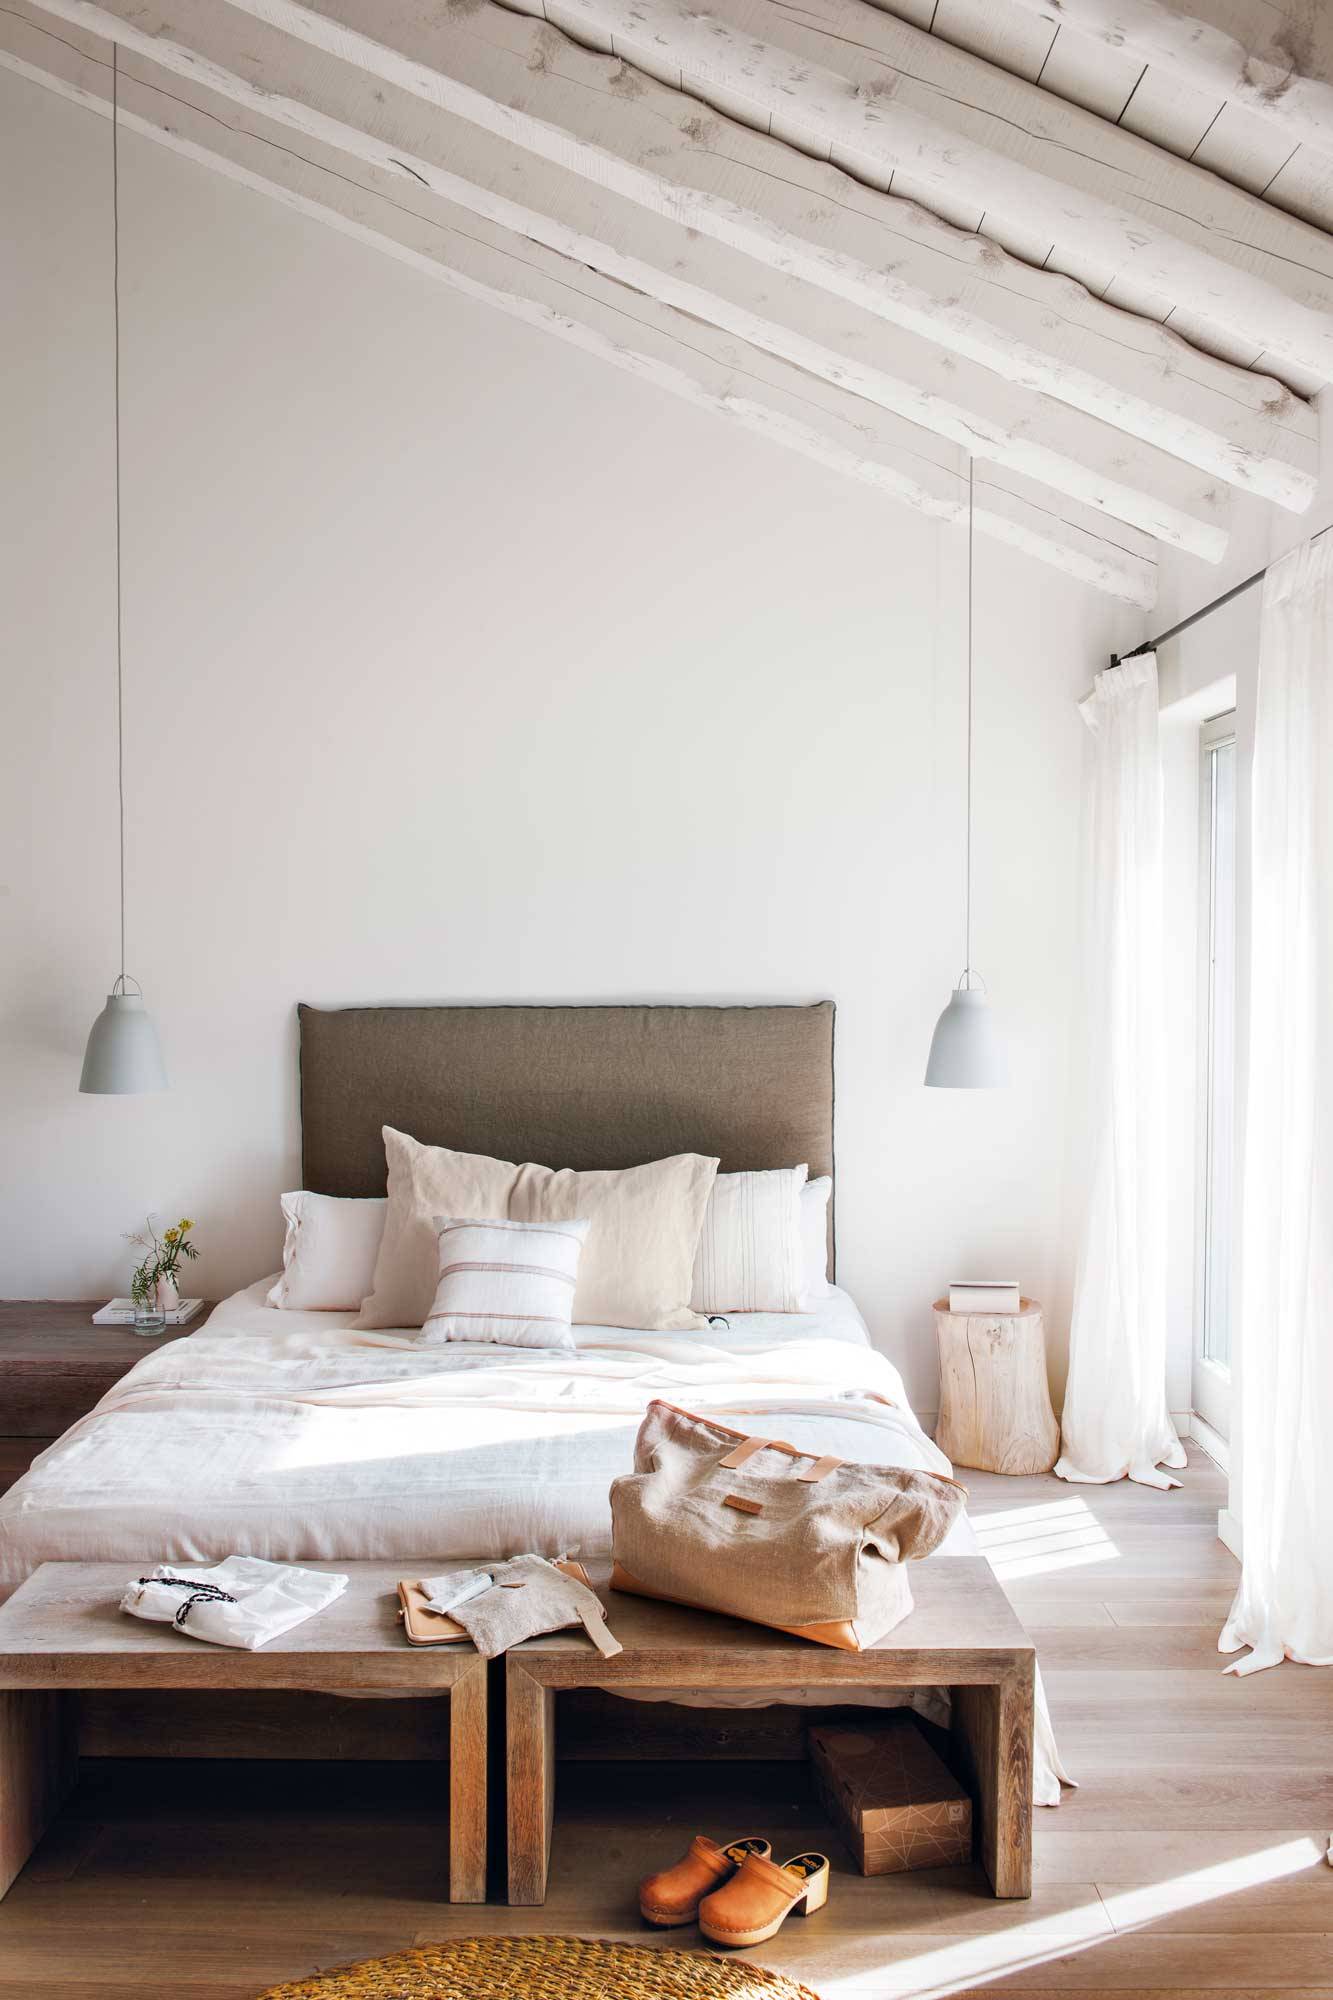 Dormitorio moderno de estilo minimalista. 